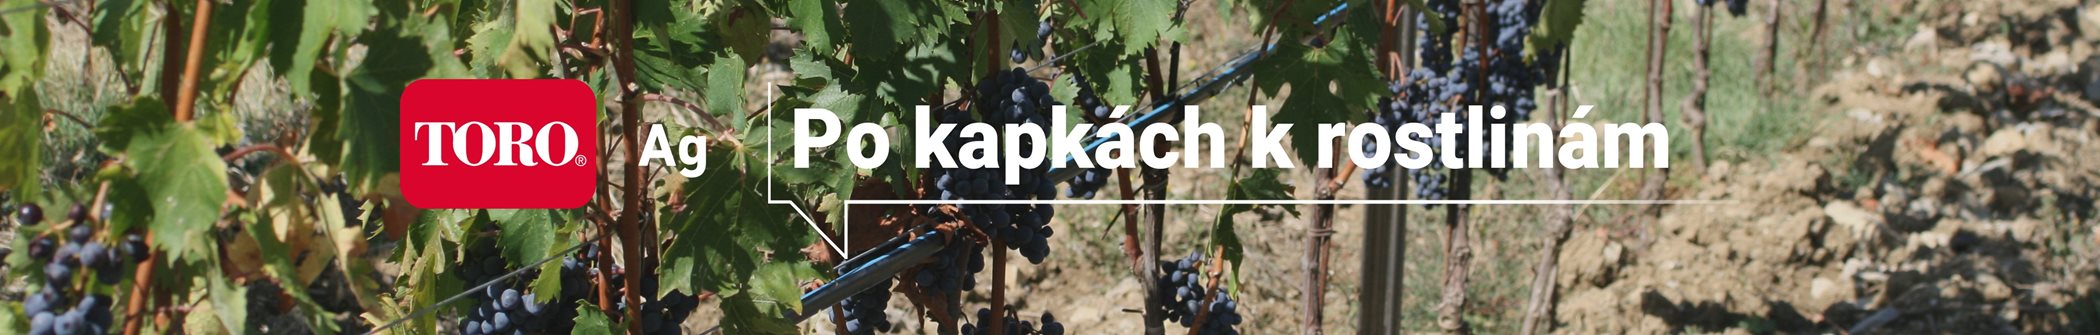 banner-po-kapkach-k-rostlinam-vinice-1.jpg